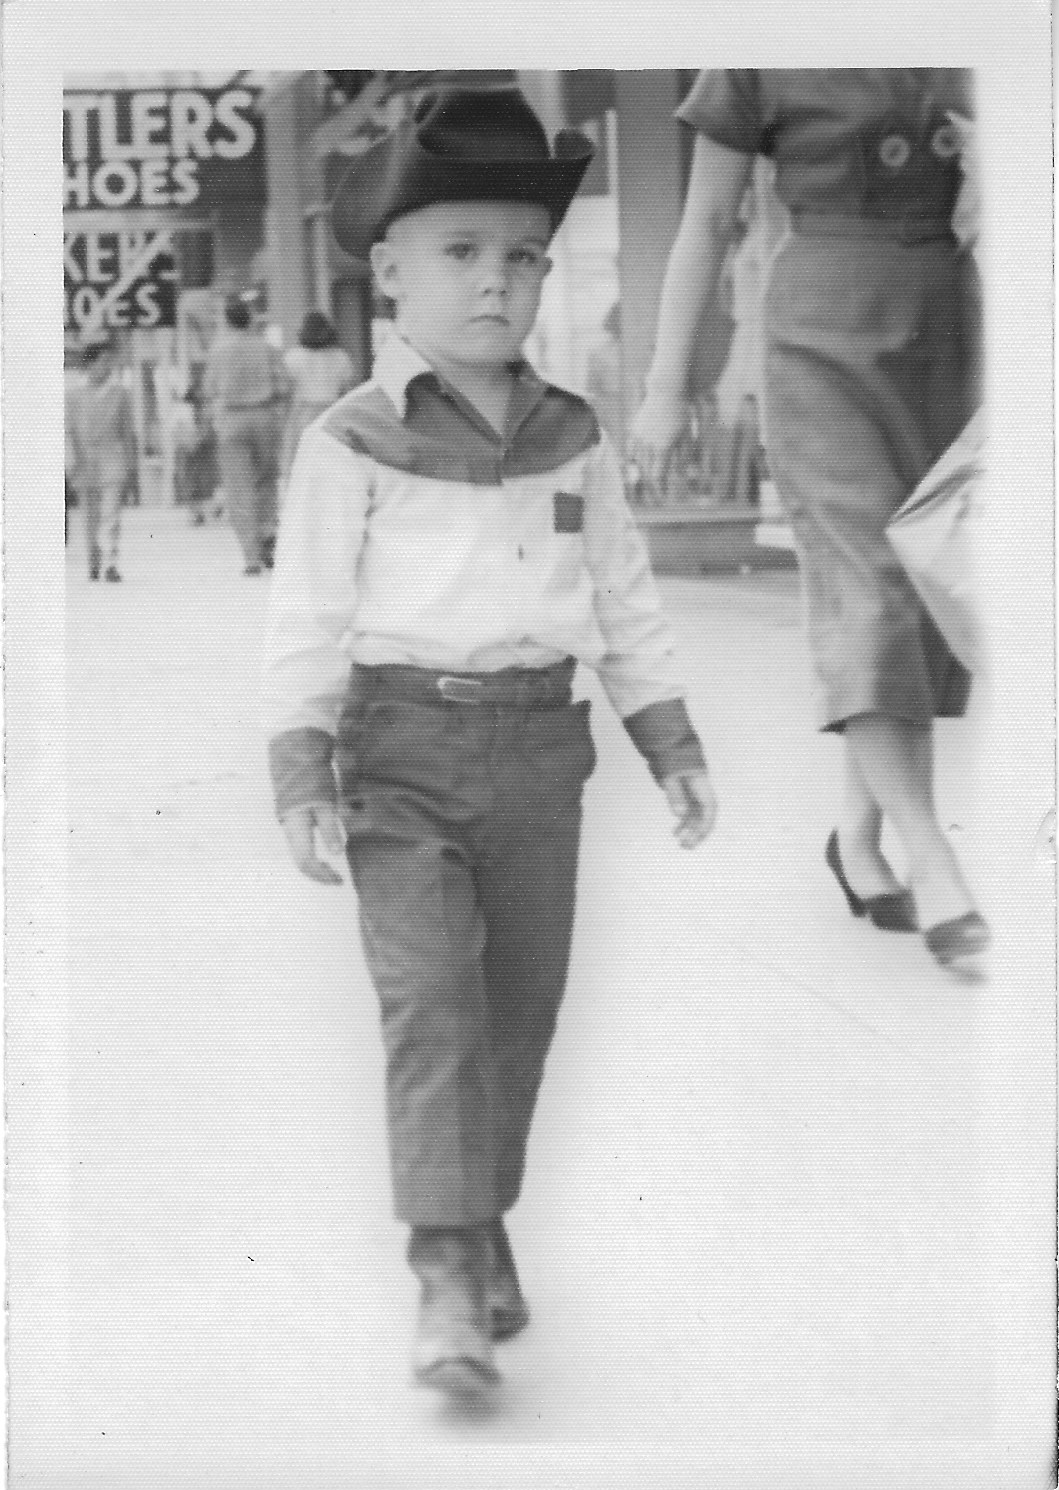 John at age 4, 1951.